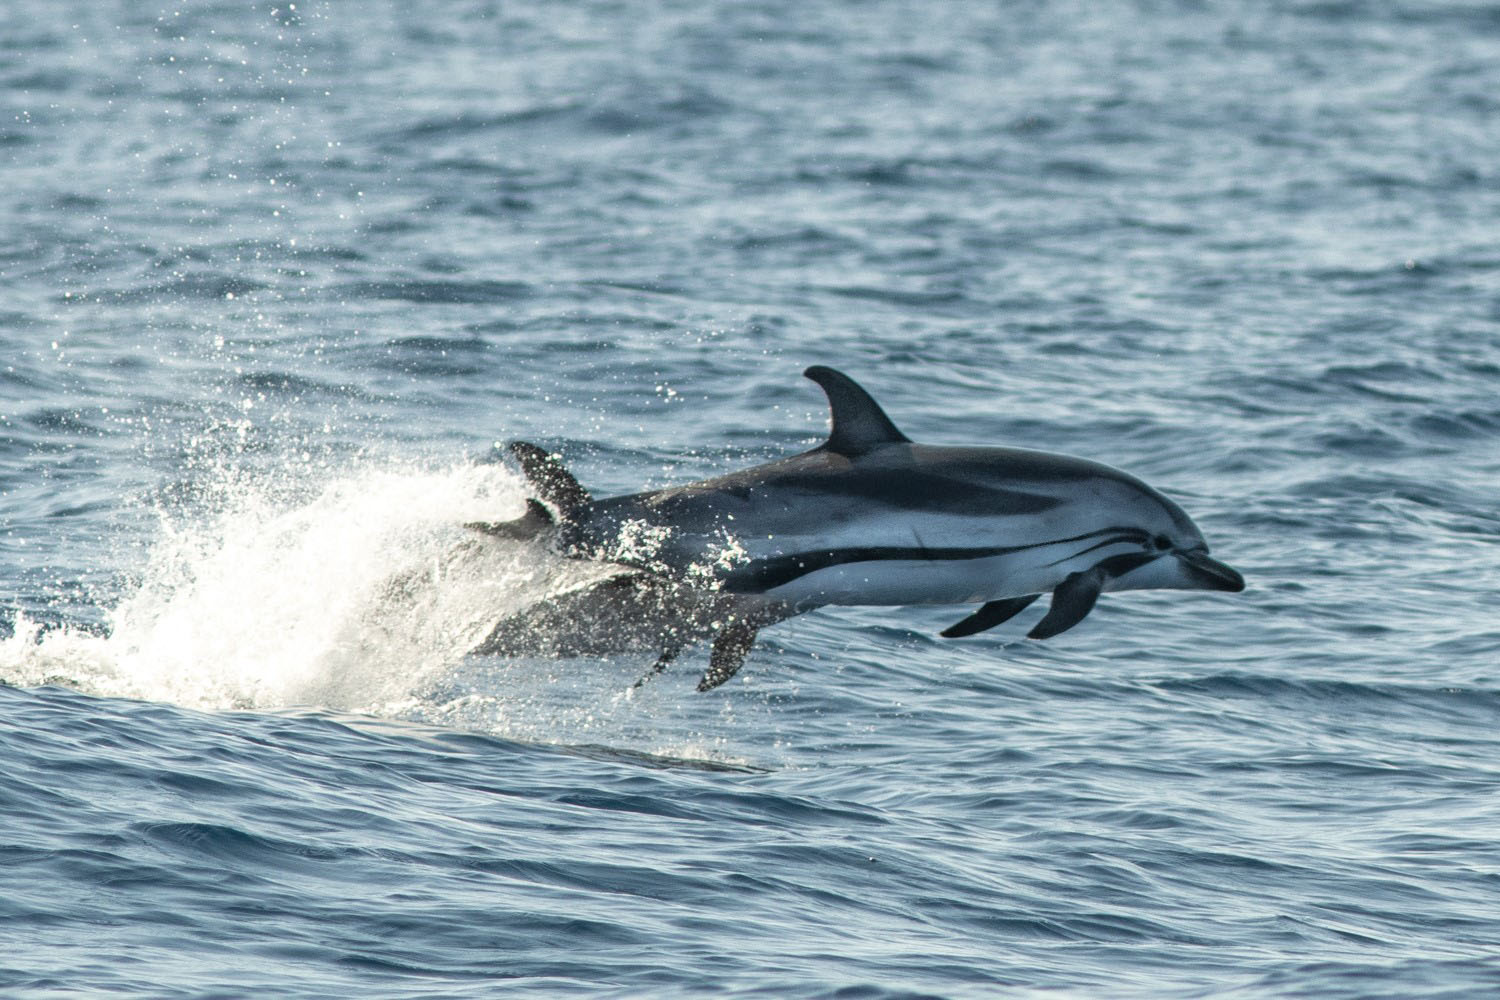 voyage scientifique - cetaces de mediterranee vers la corse a la voile